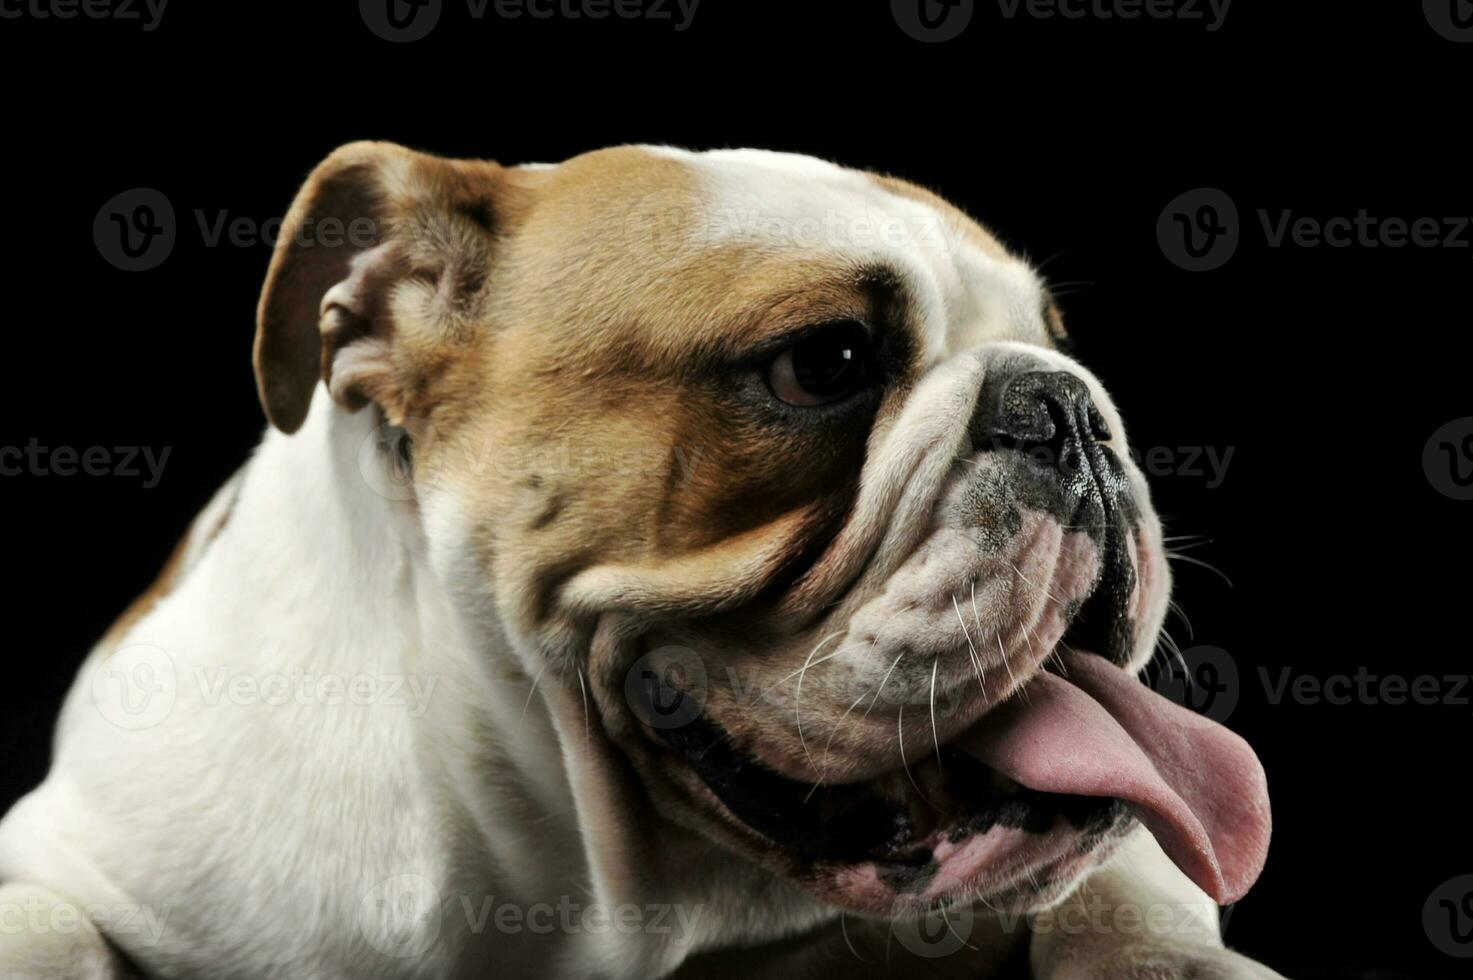 engelsk bulldogg fastnar ut hans tunga i de mörk studio foto